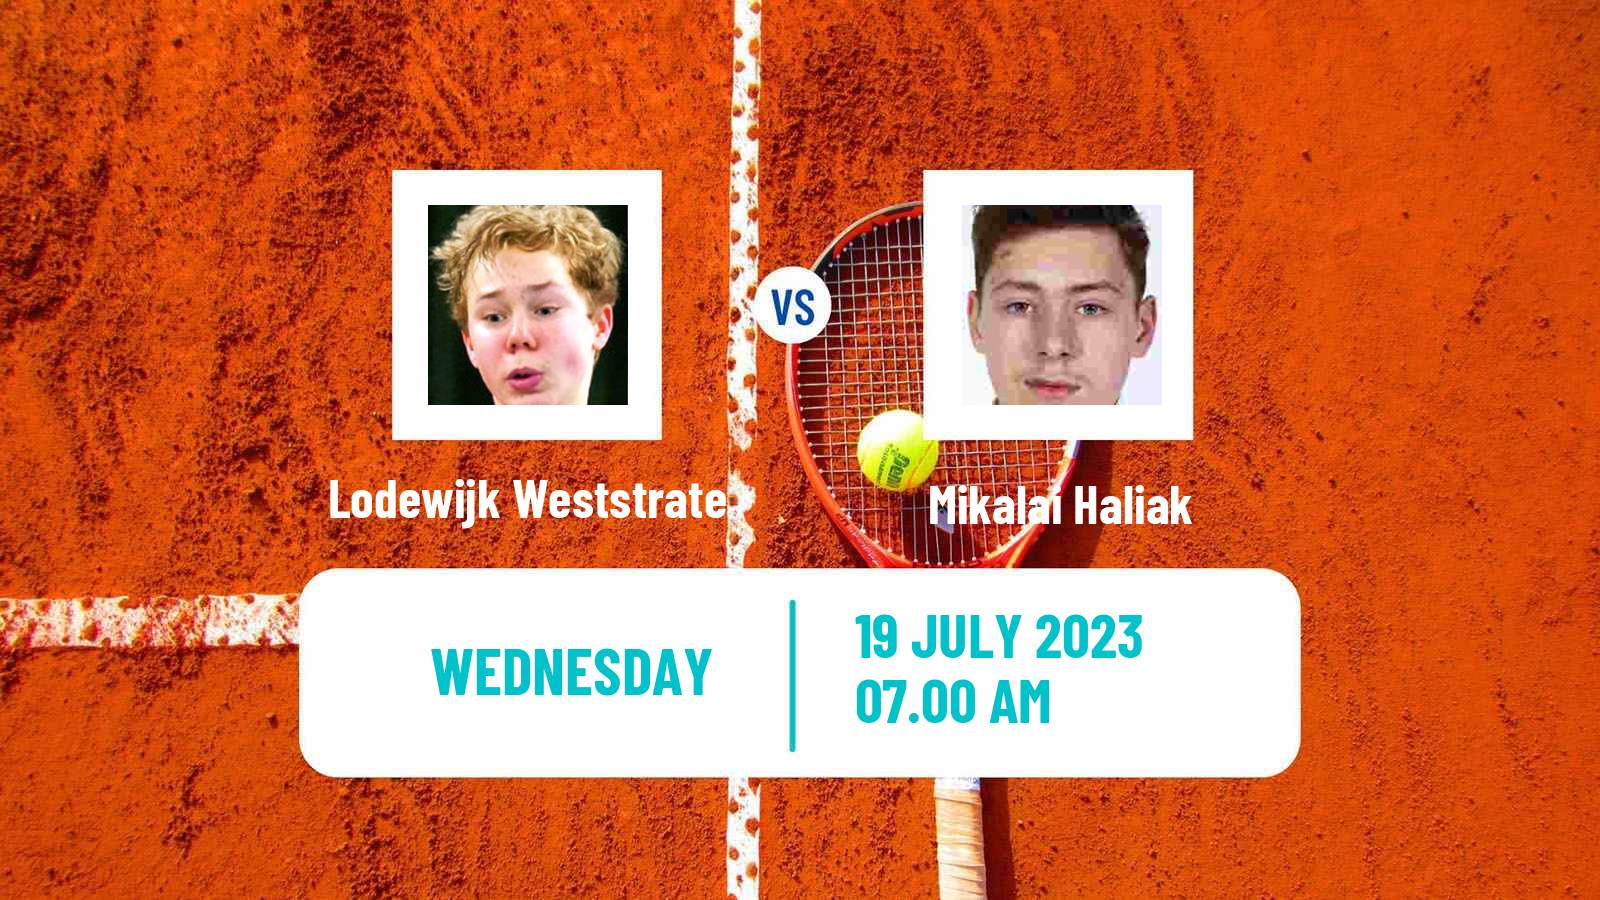 Tennis ITF M25 Esch Alzette 2 Men Lodewijk Weststrate - Mikalai Haliak